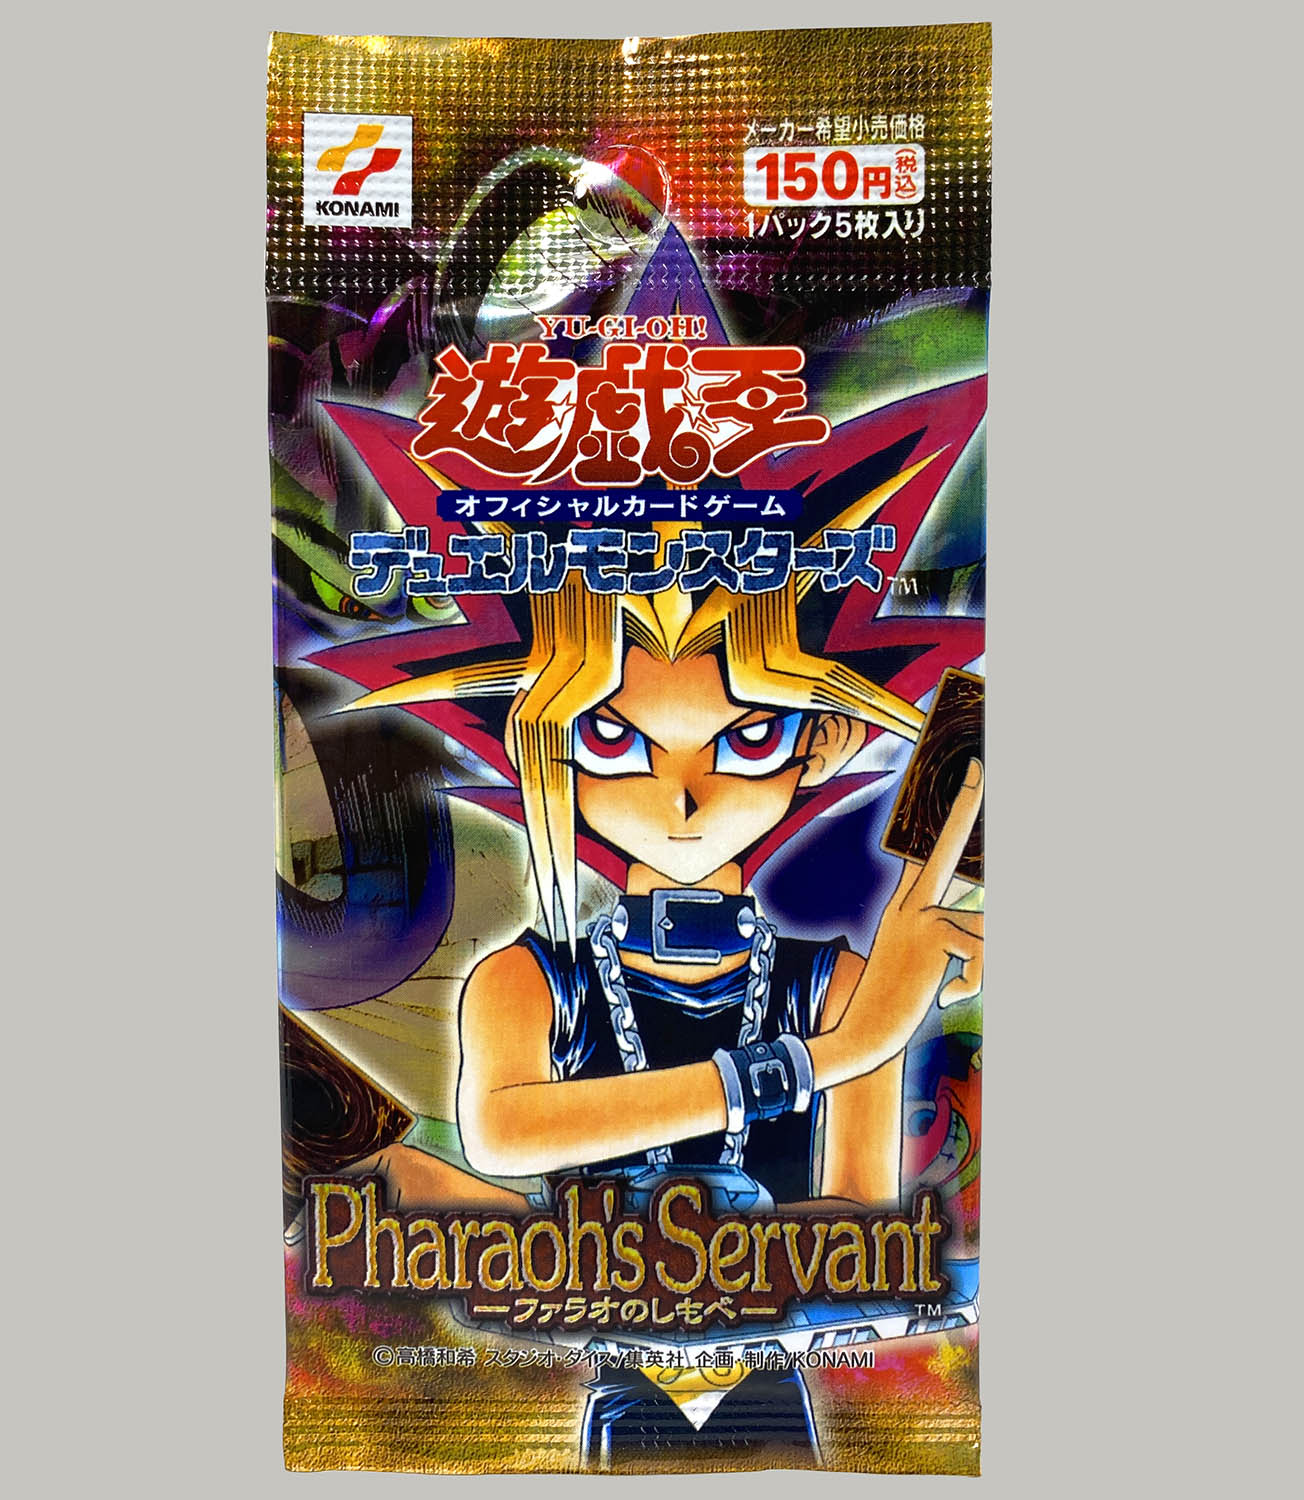 6015] 遊戯王 第2期ブースターパック Pharaoh's Servant ファラオのし